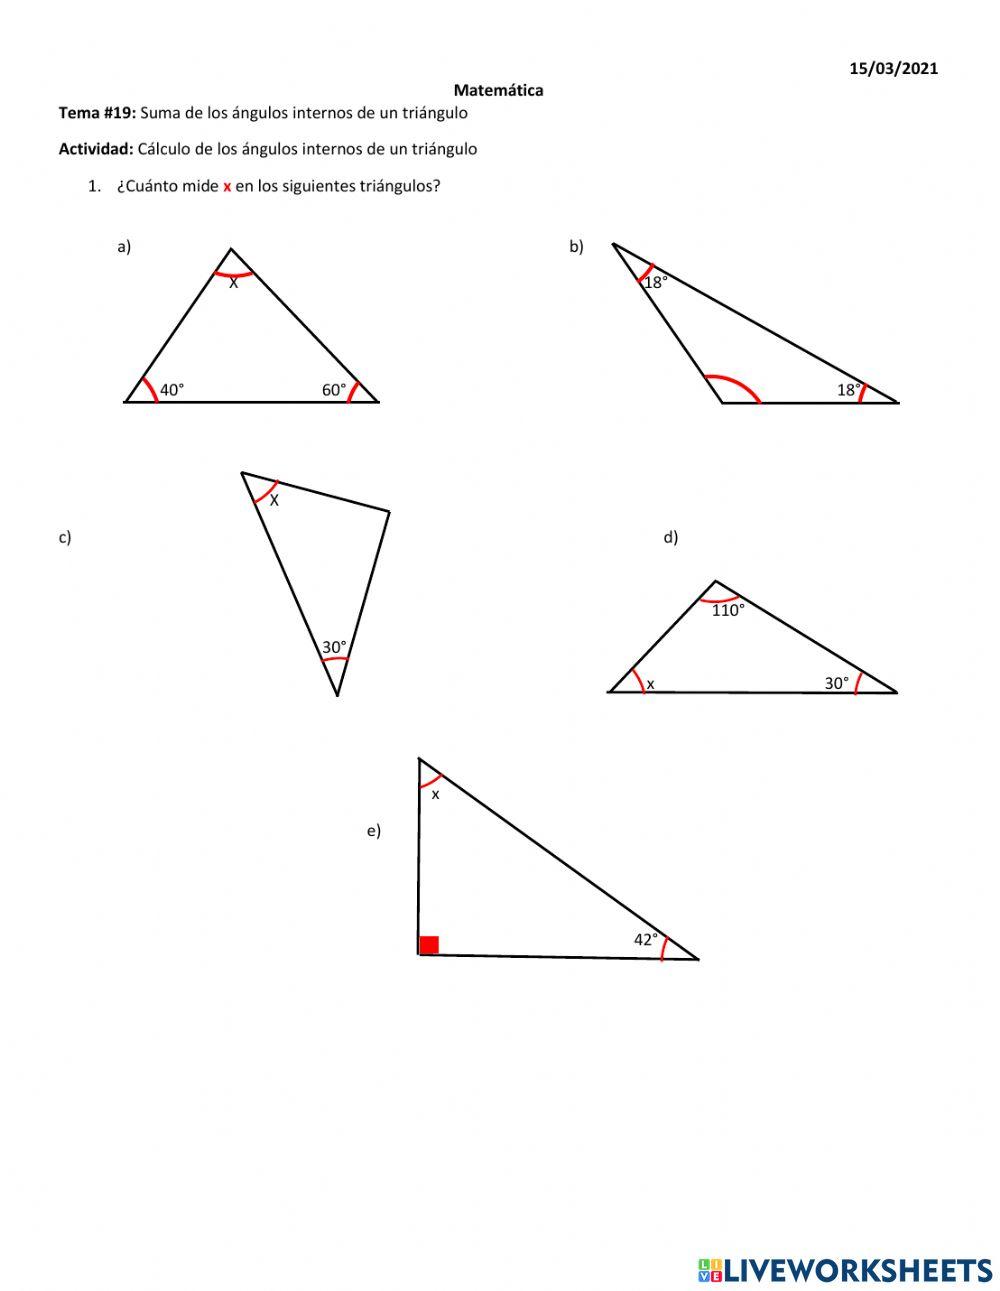 Ángulos internos en un triángulo